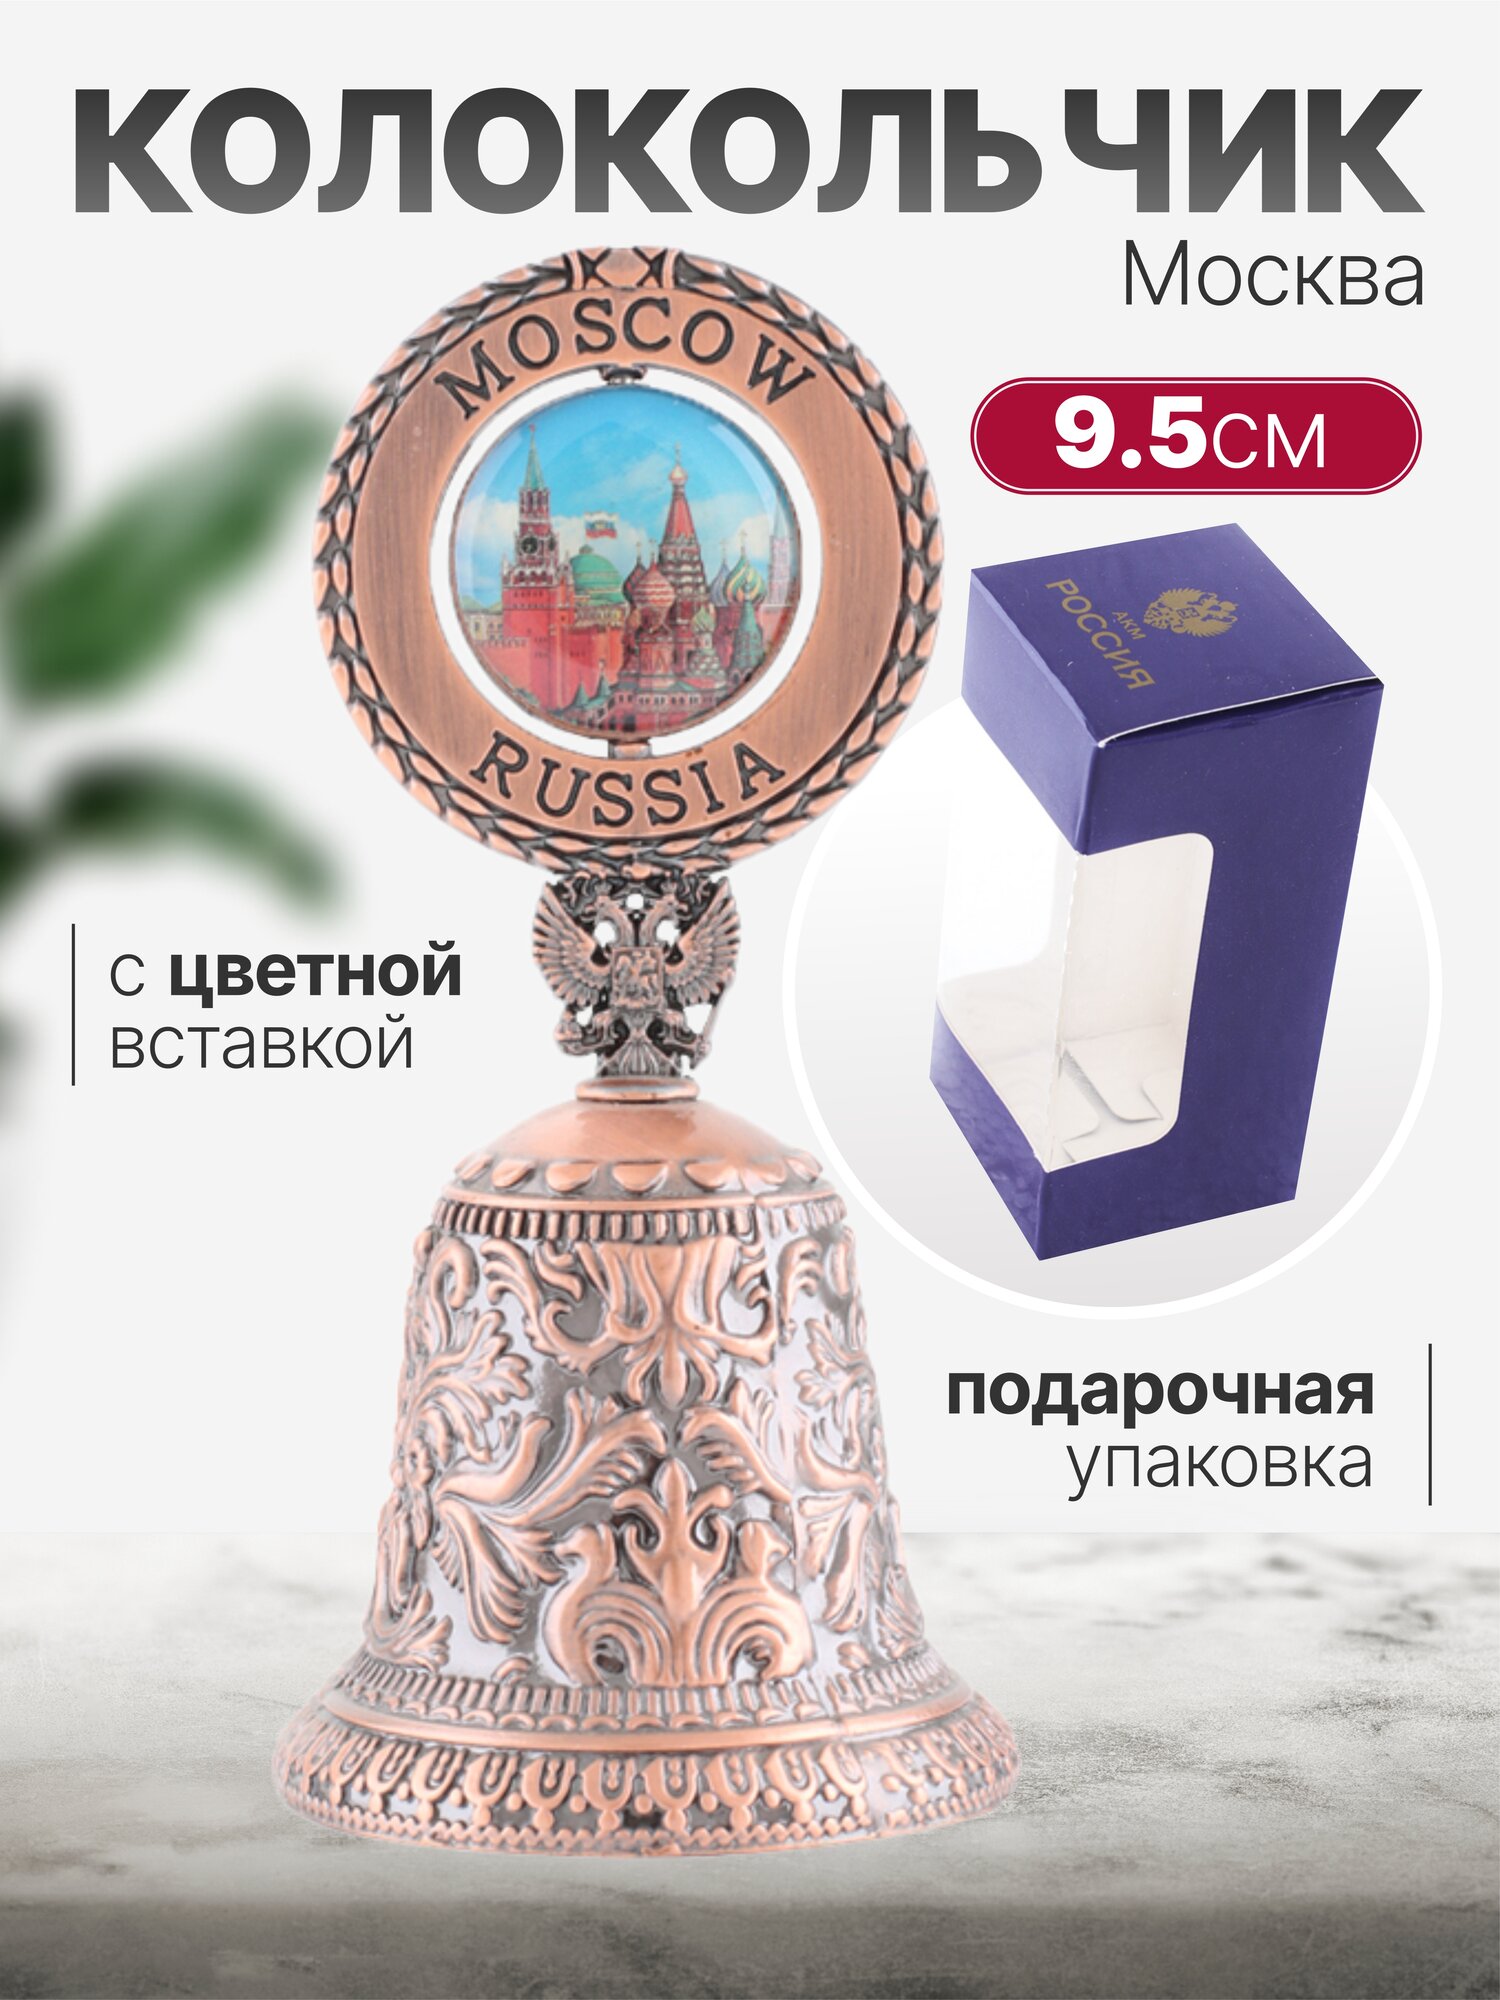 Колокольчик Москва, Узоры с цветной вставкой, цвет медь, высота 9,5см